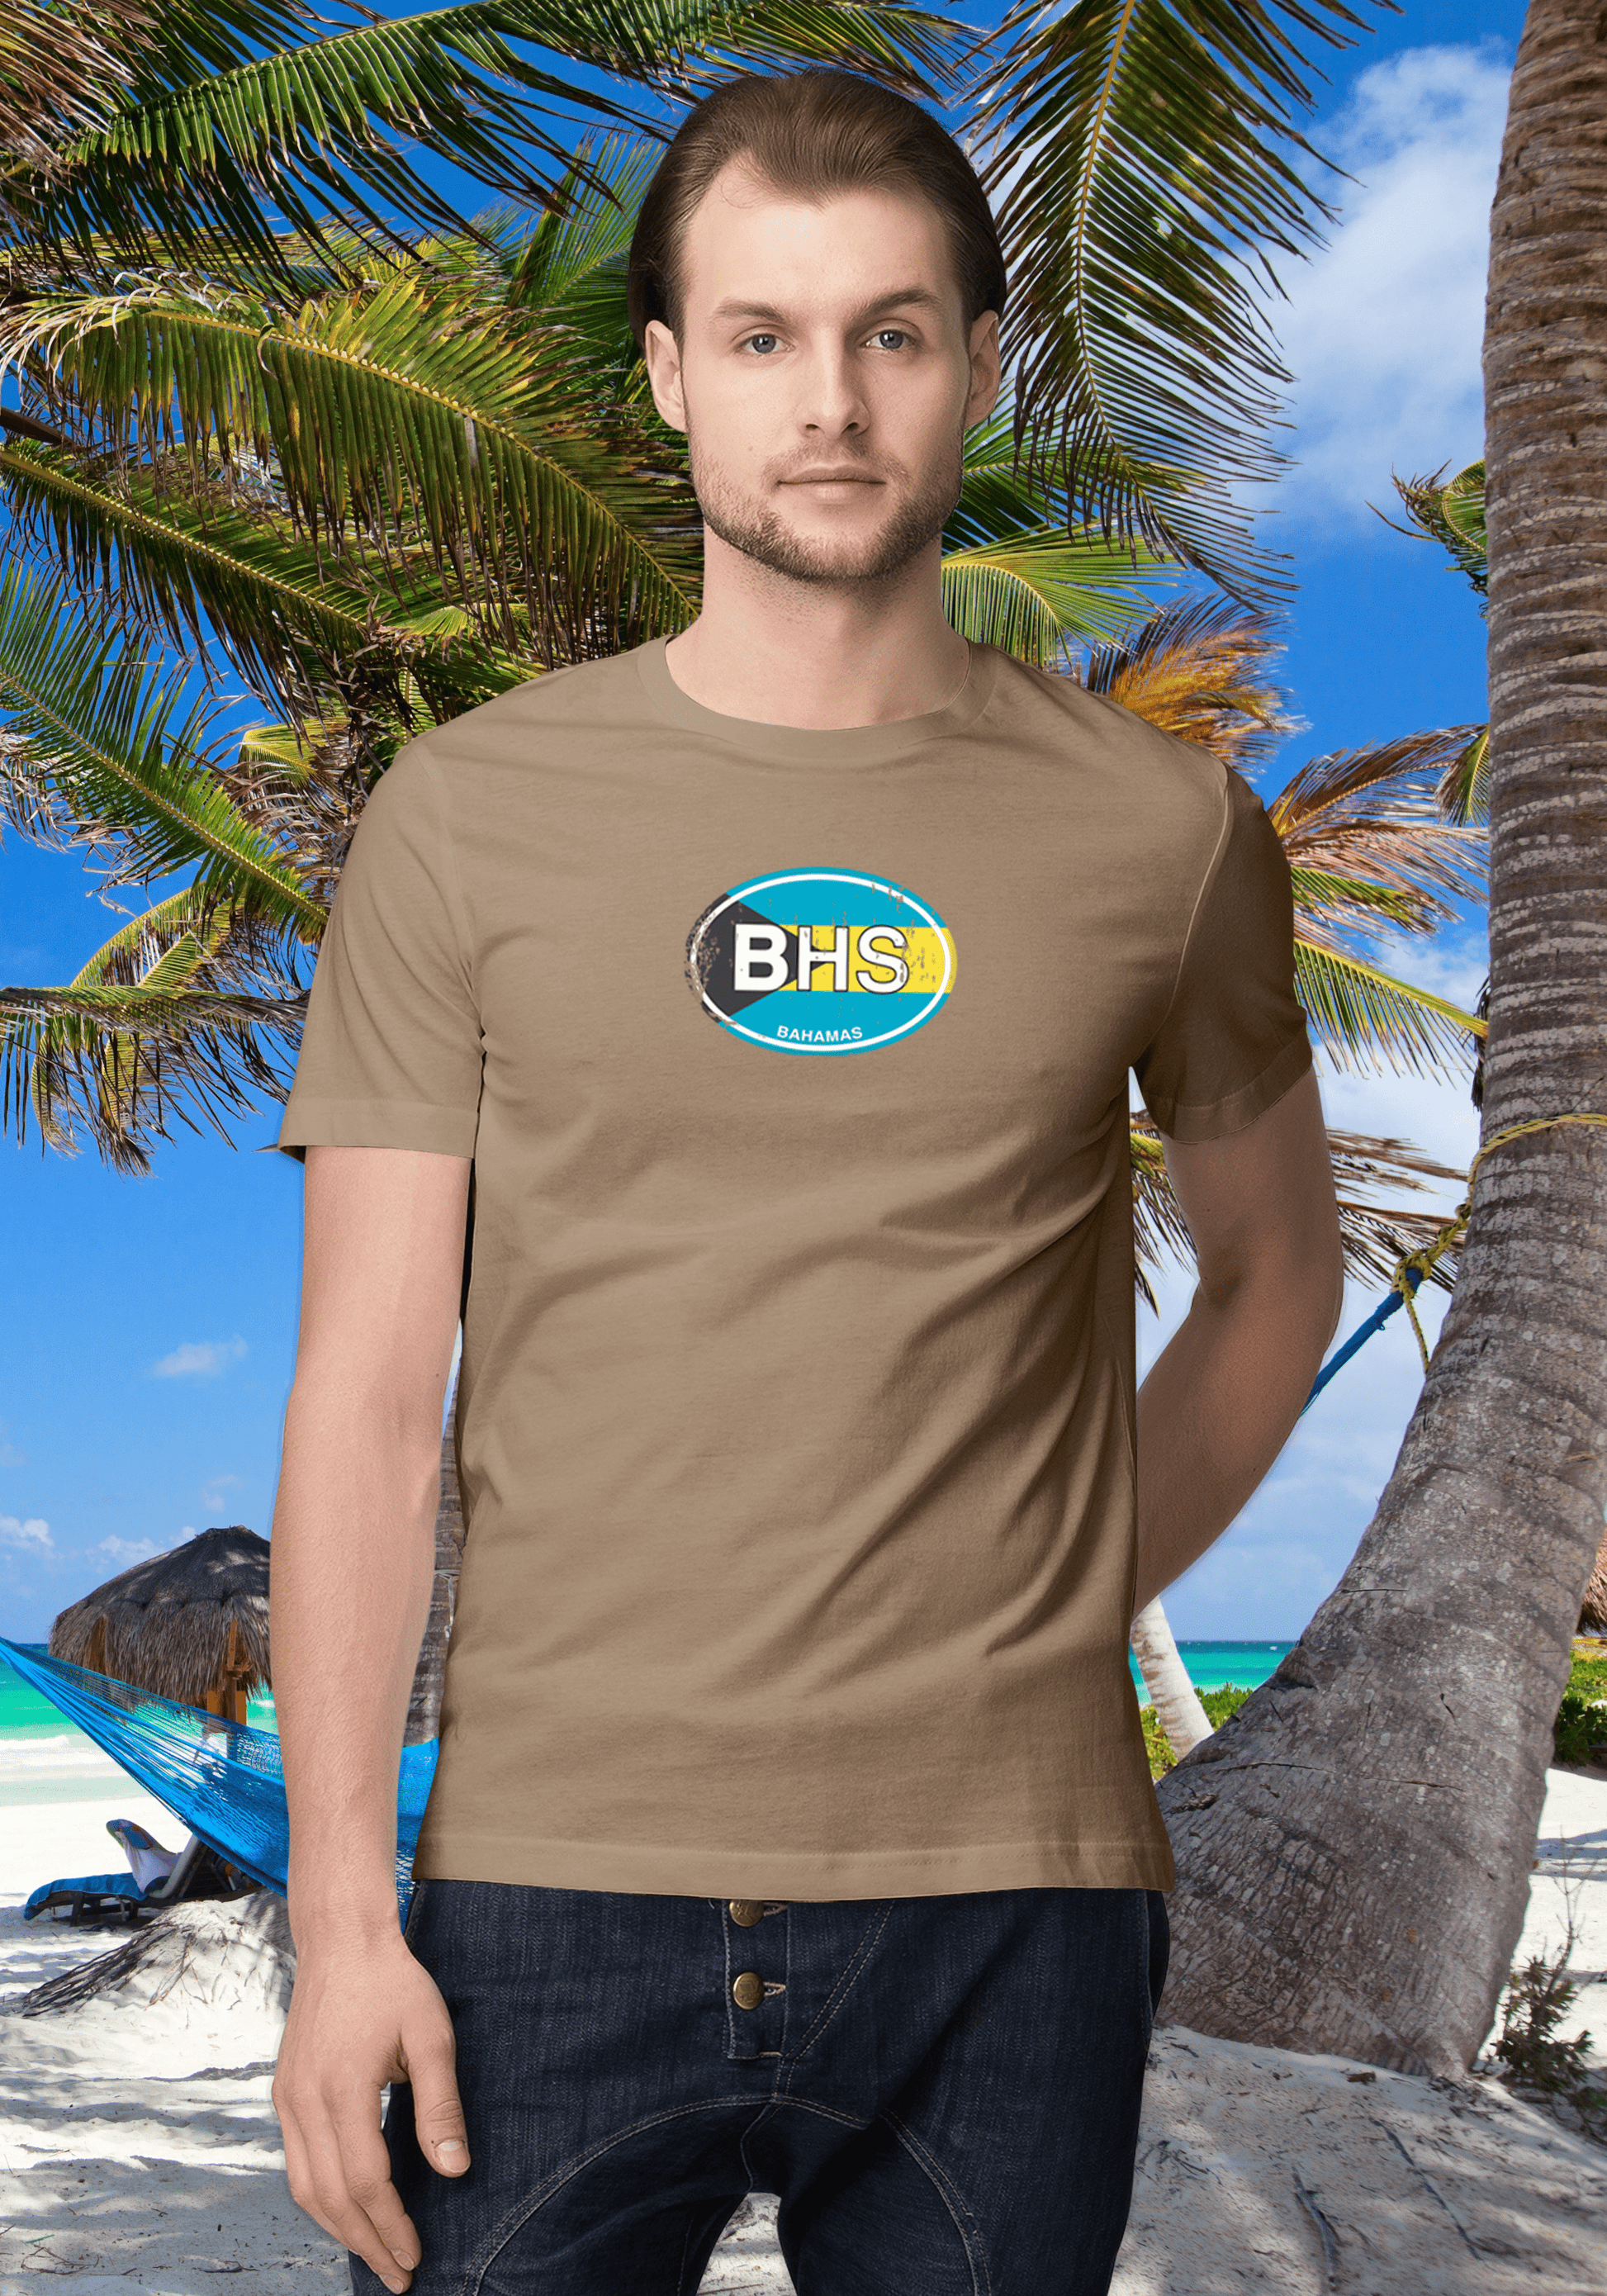 Bahamas Men's Flag T-Shirt Souvenirs - My Destination Location